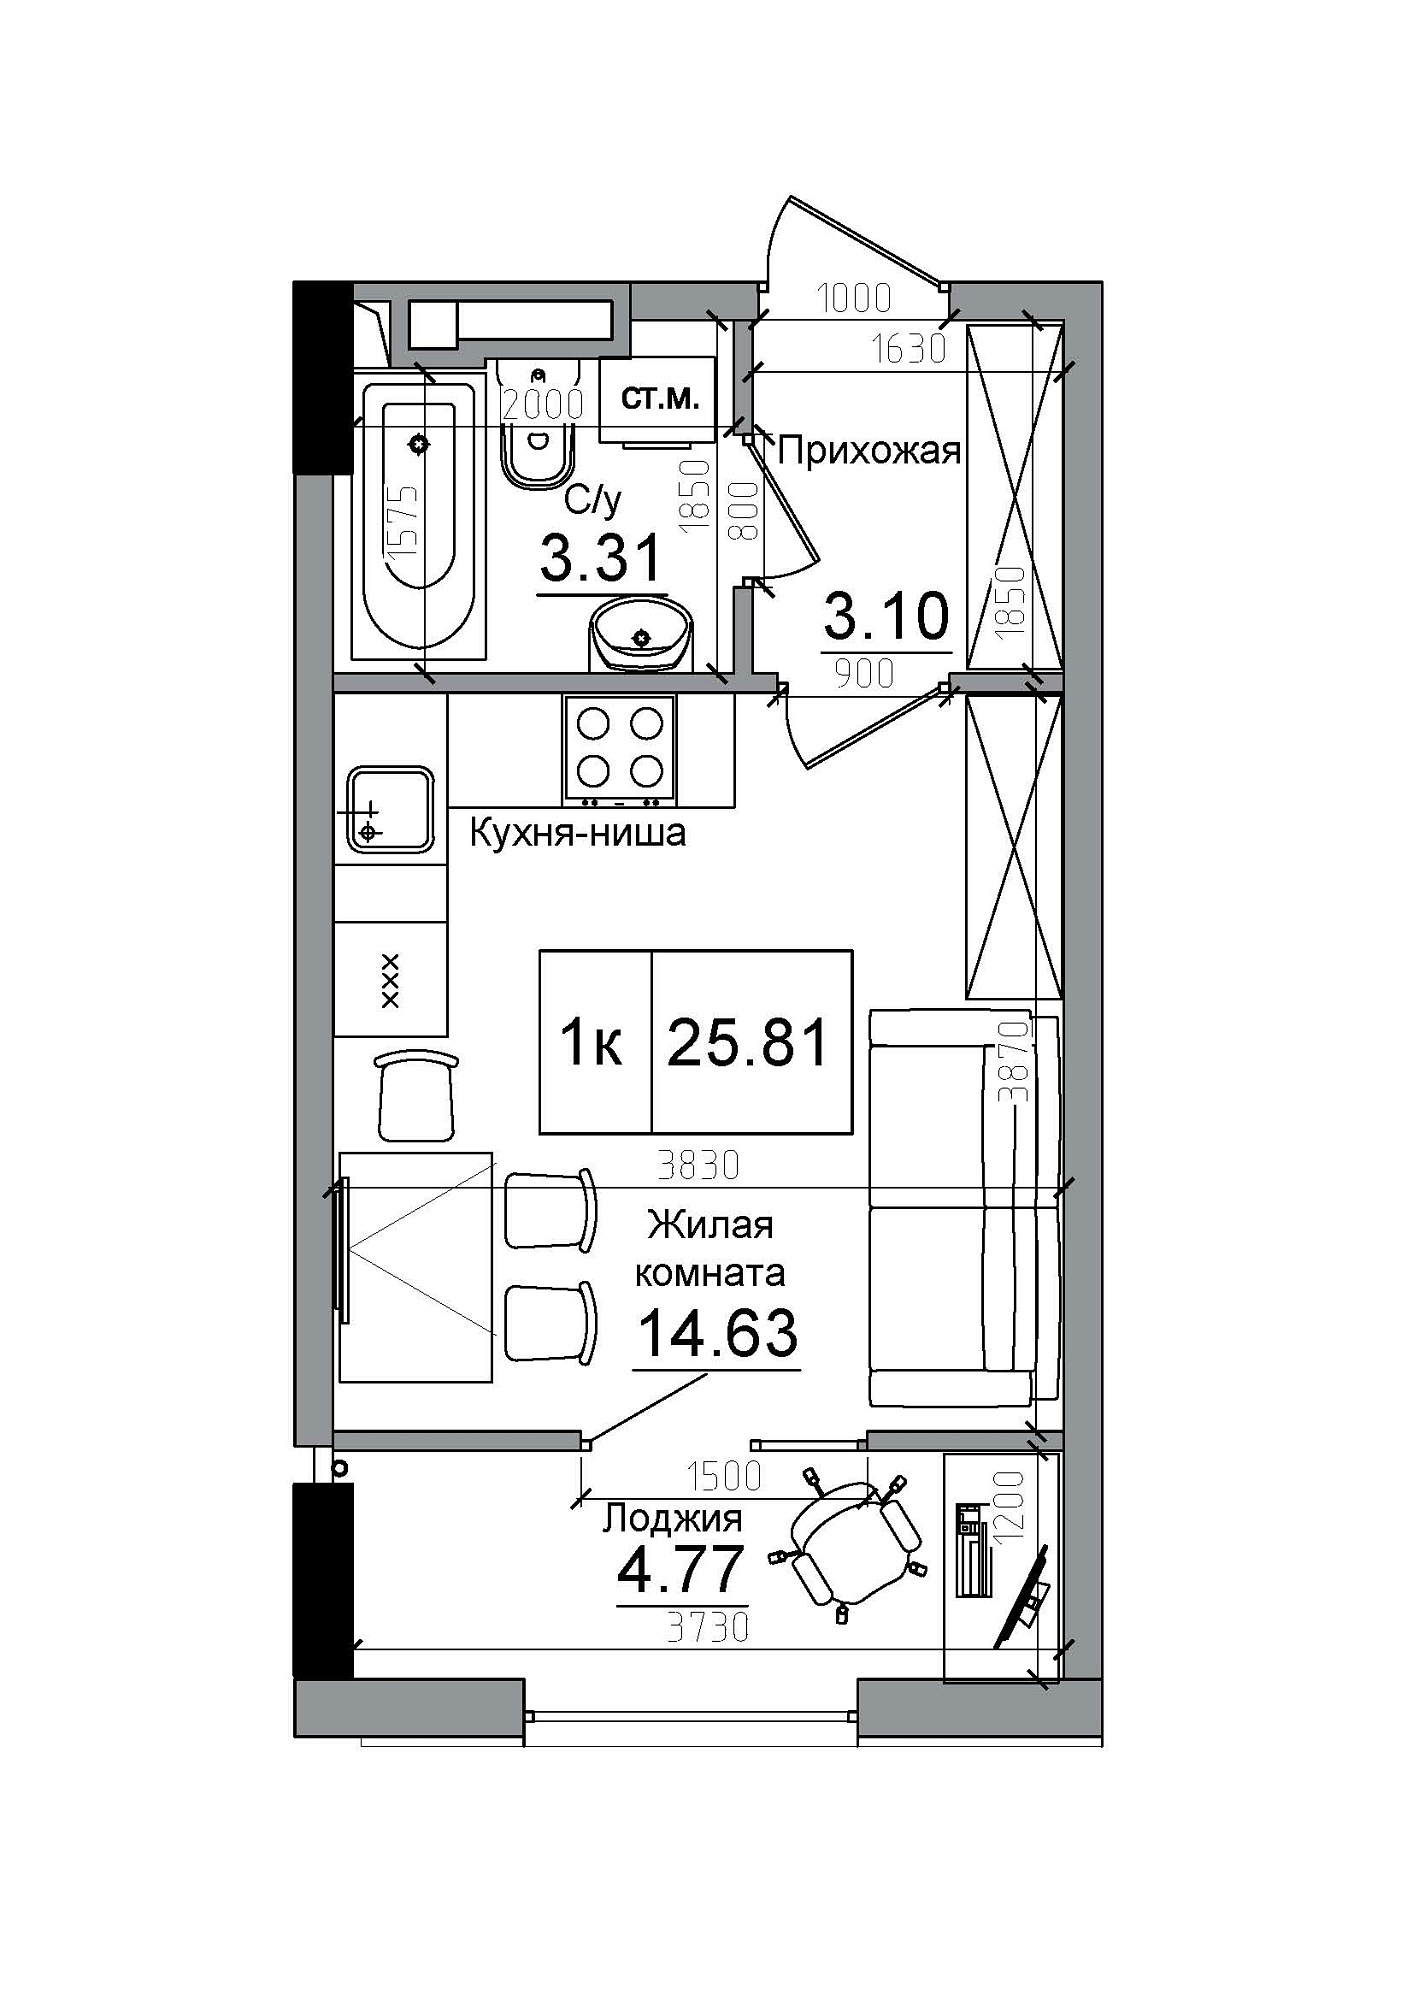 Планування Smart-квартира площею 25.81м2, AB-12-11/00013.